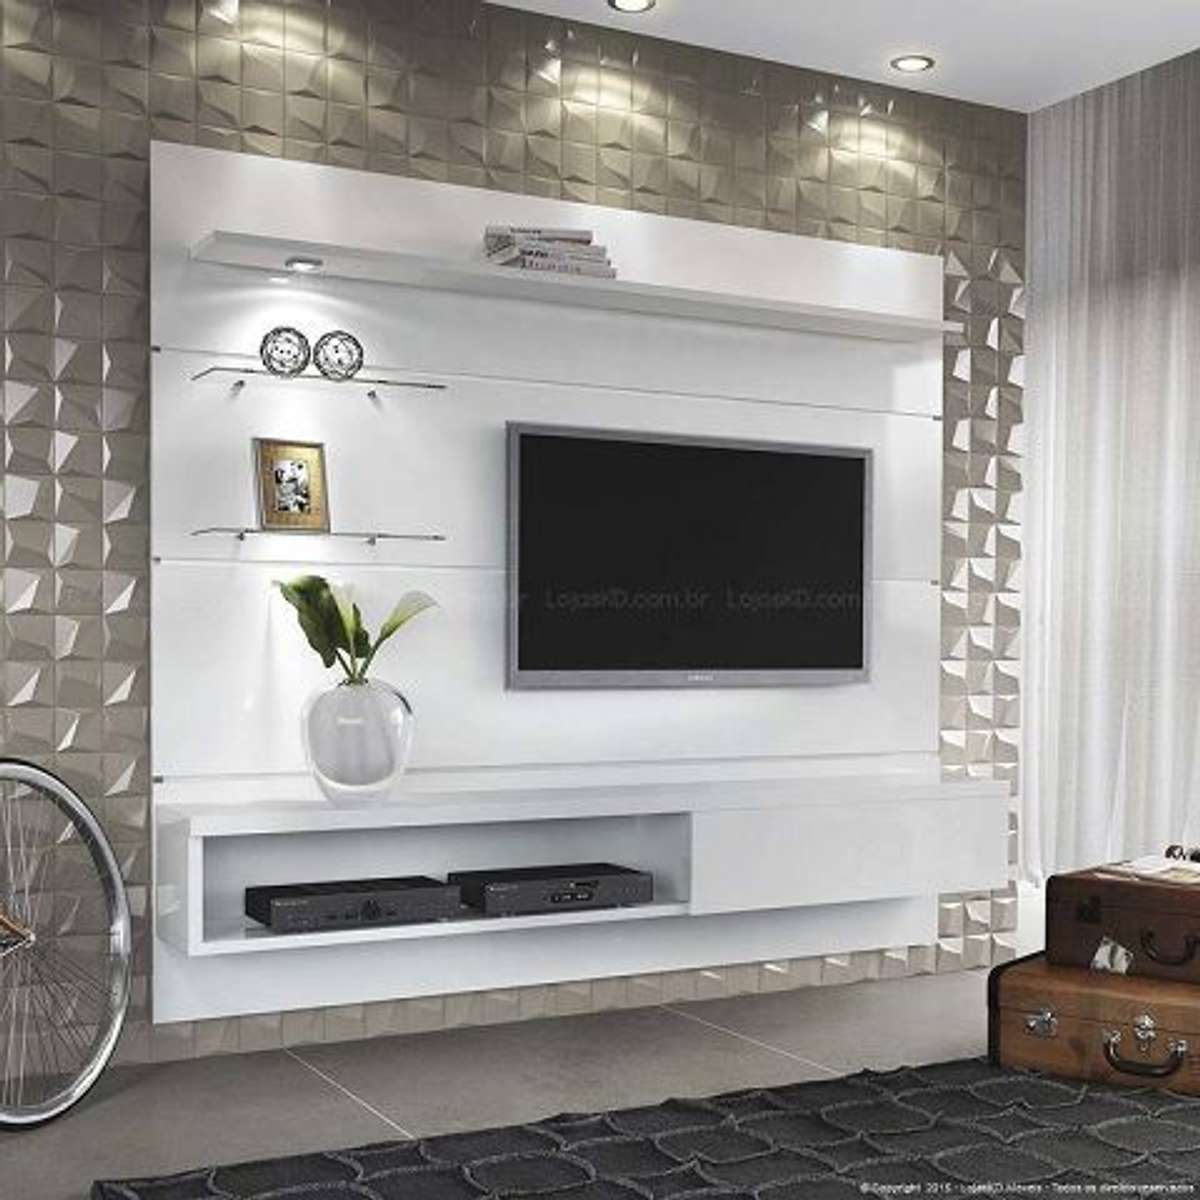 #TV unit design #TV panel design #TV unit furniture design